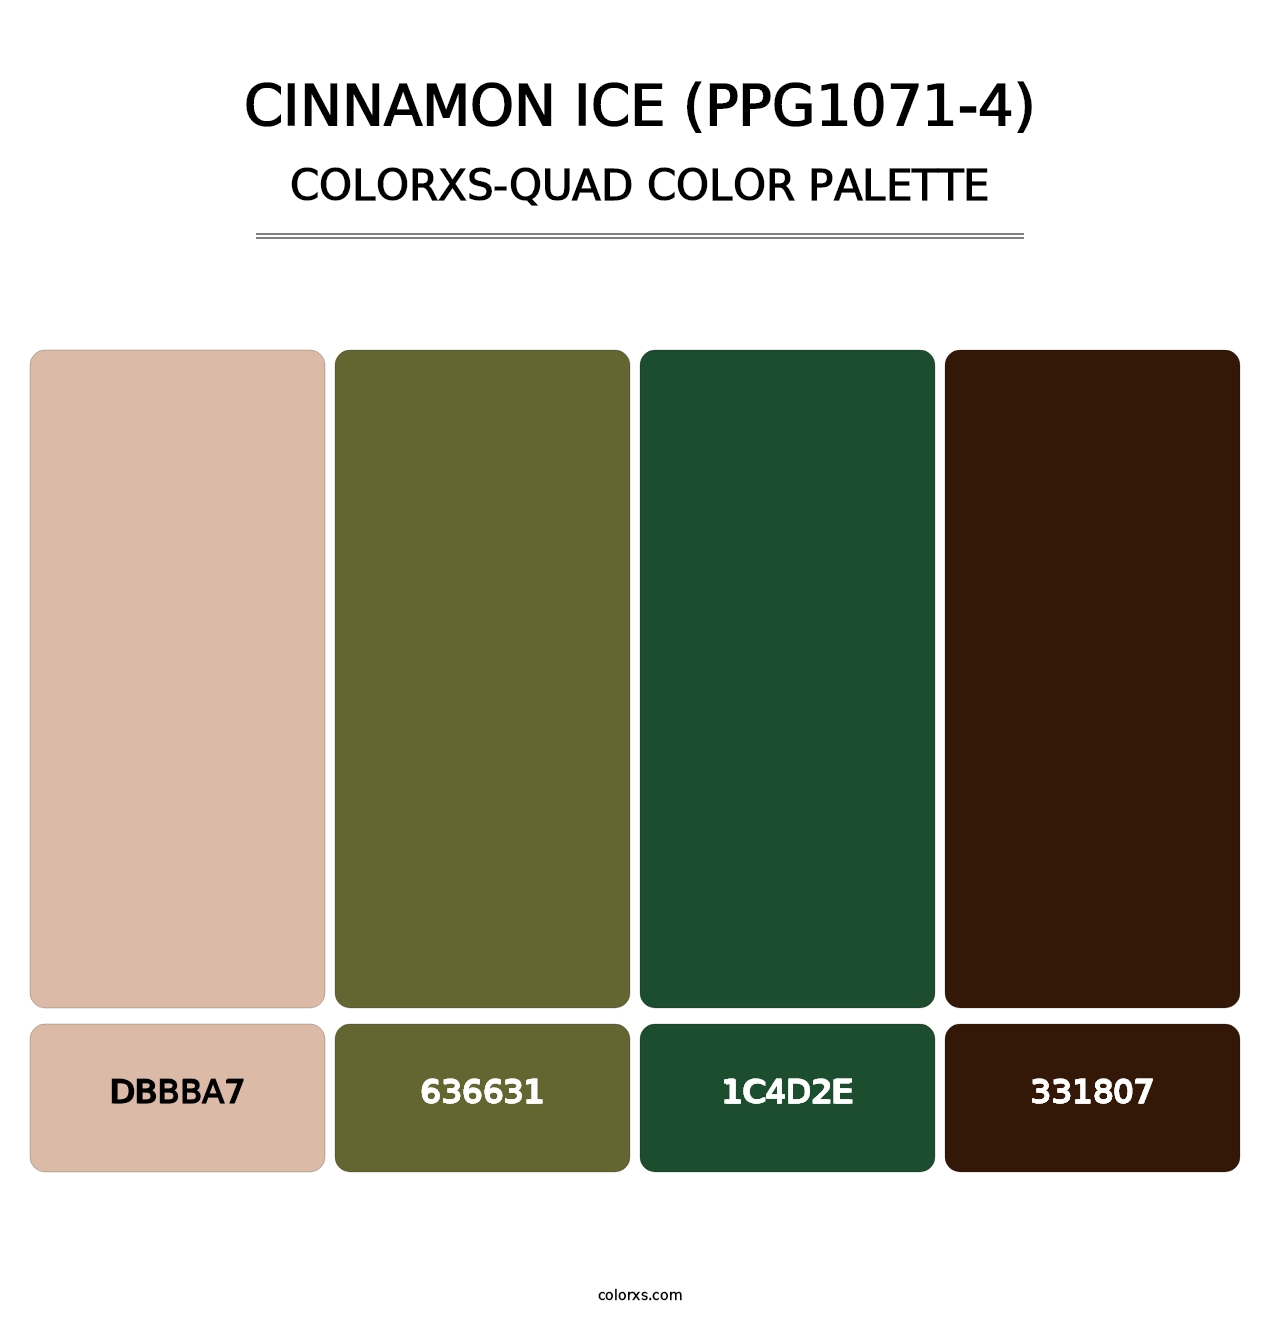 Cinnamon Ice (PPG1071-4) - Colorxs Quad Palette